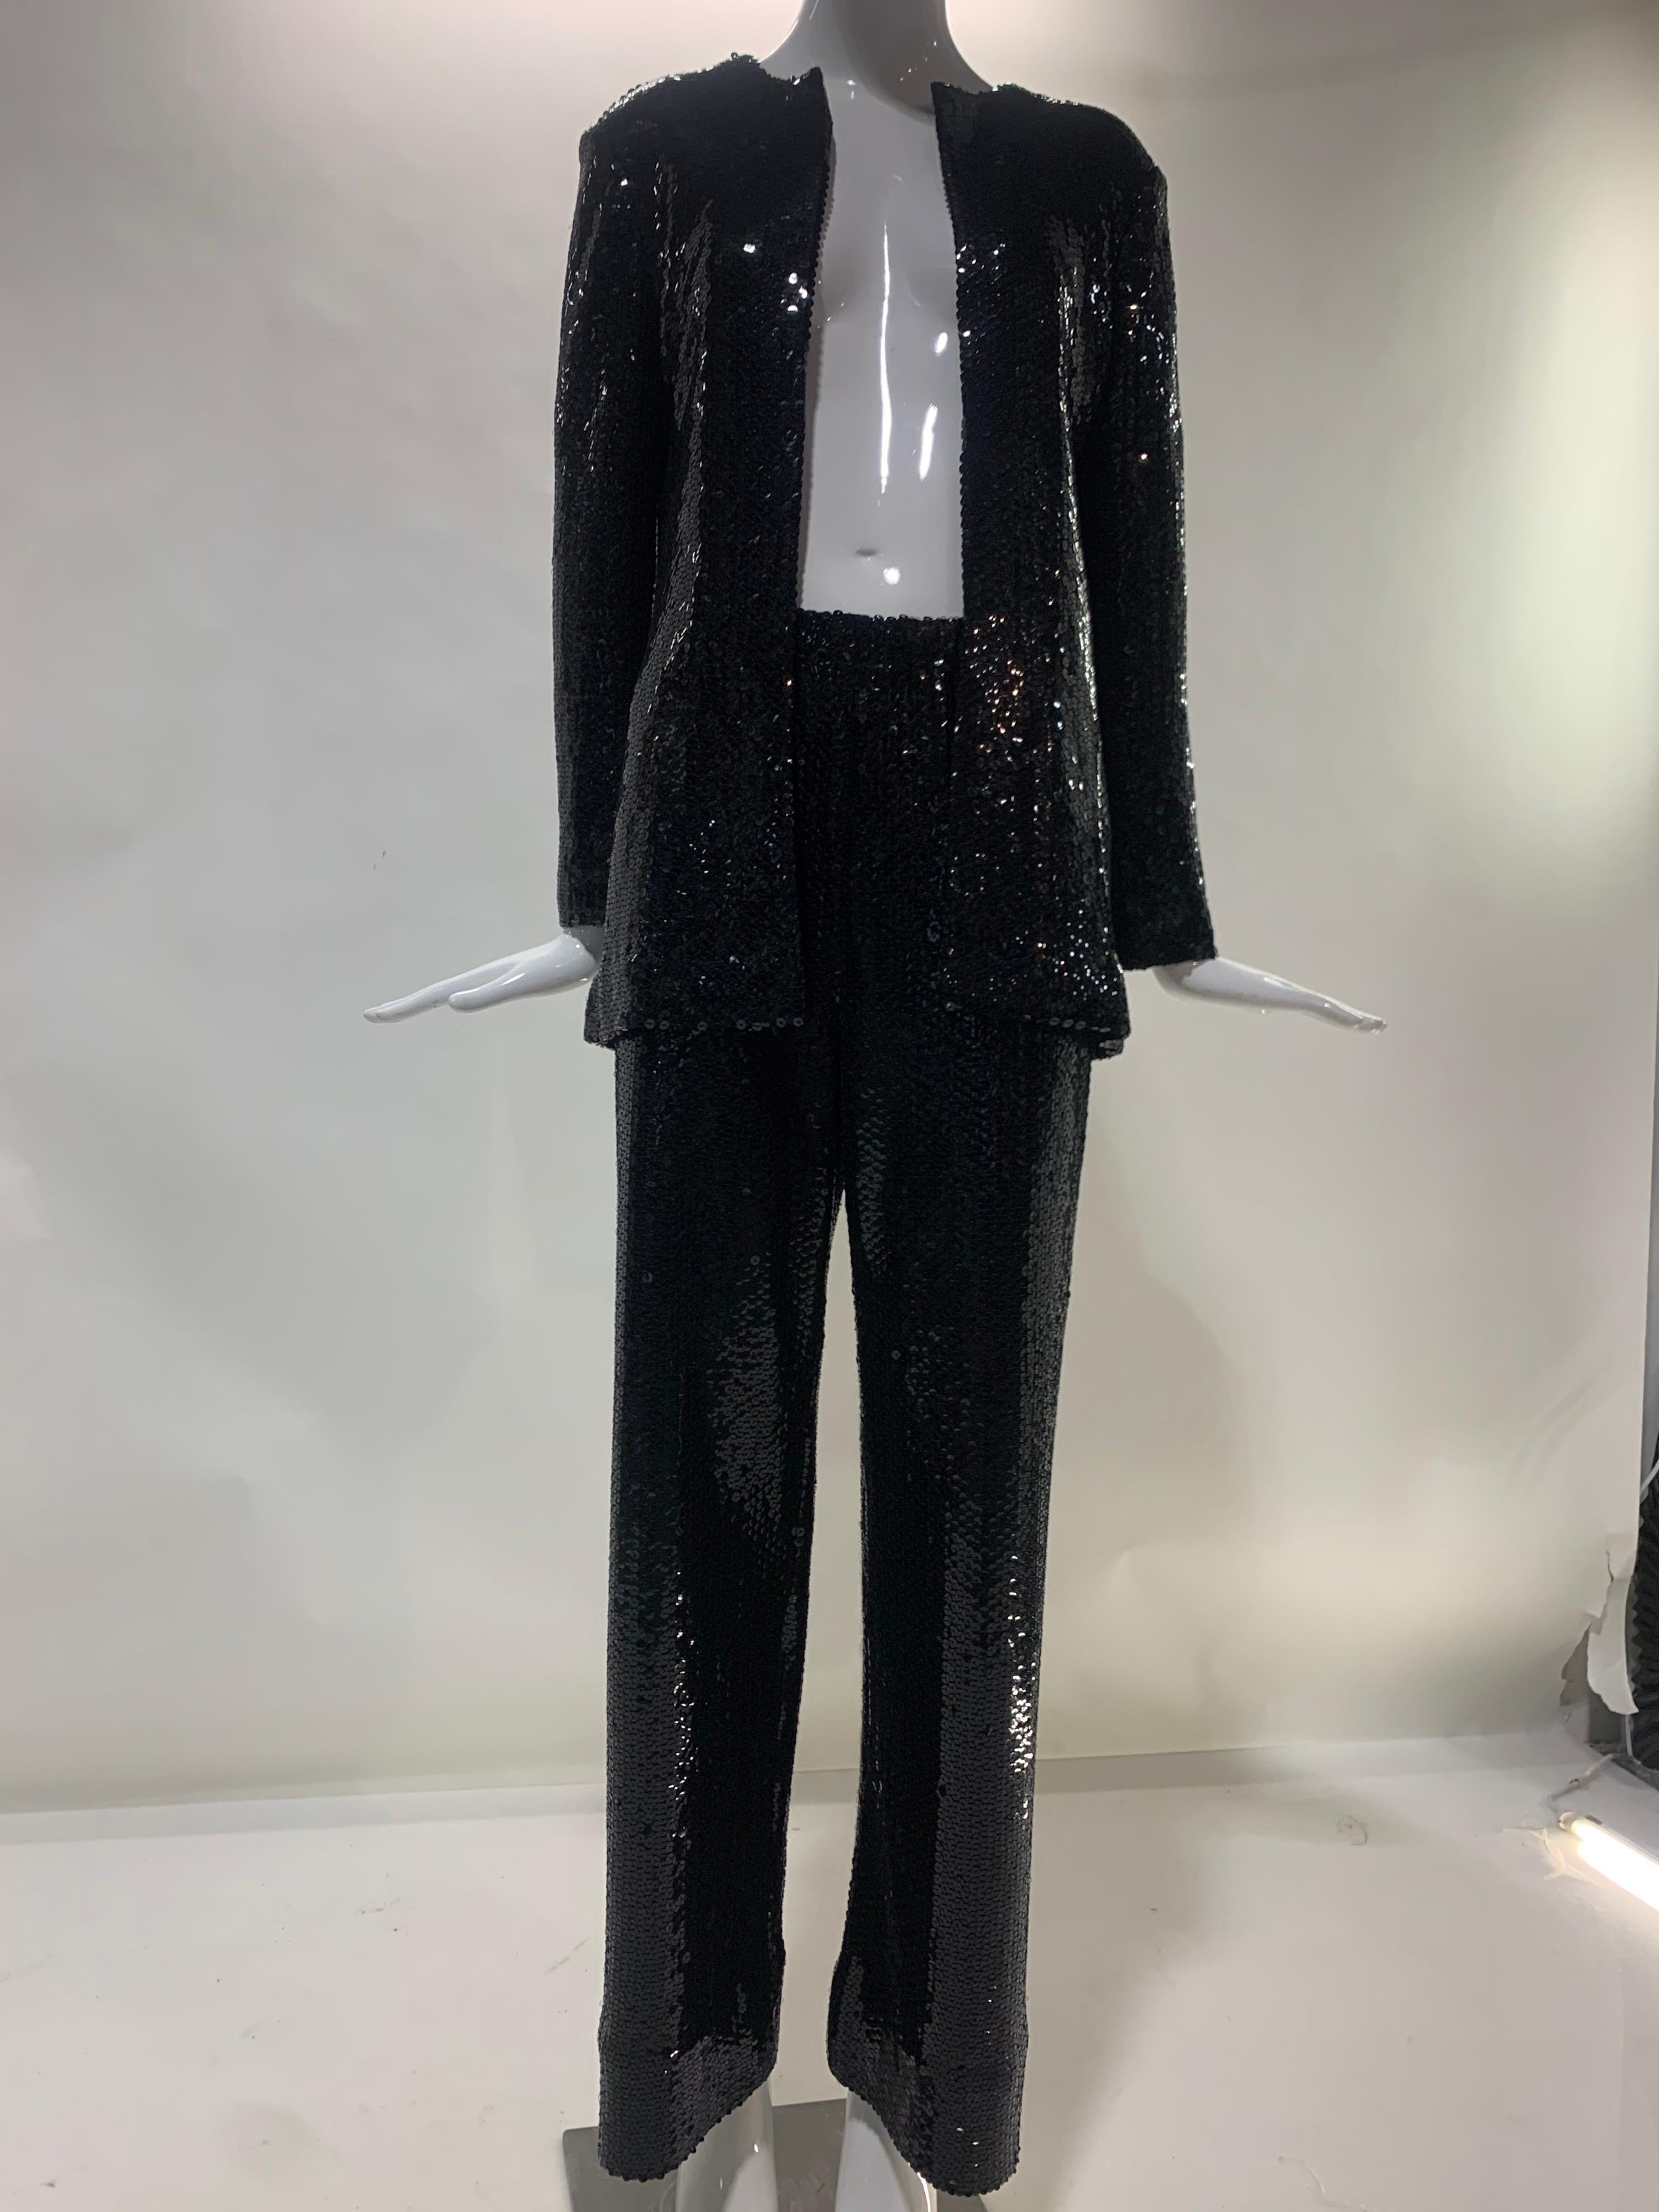 Un fabuleux tailleur pantalon Halston noir à paillettes sur jersey mat, datant des années 1970. Ce look classique Halston a rendu Liza Minnelli célèbre !  Faites votre Glam on !  Neuf, jamais porté. Taille 8. 